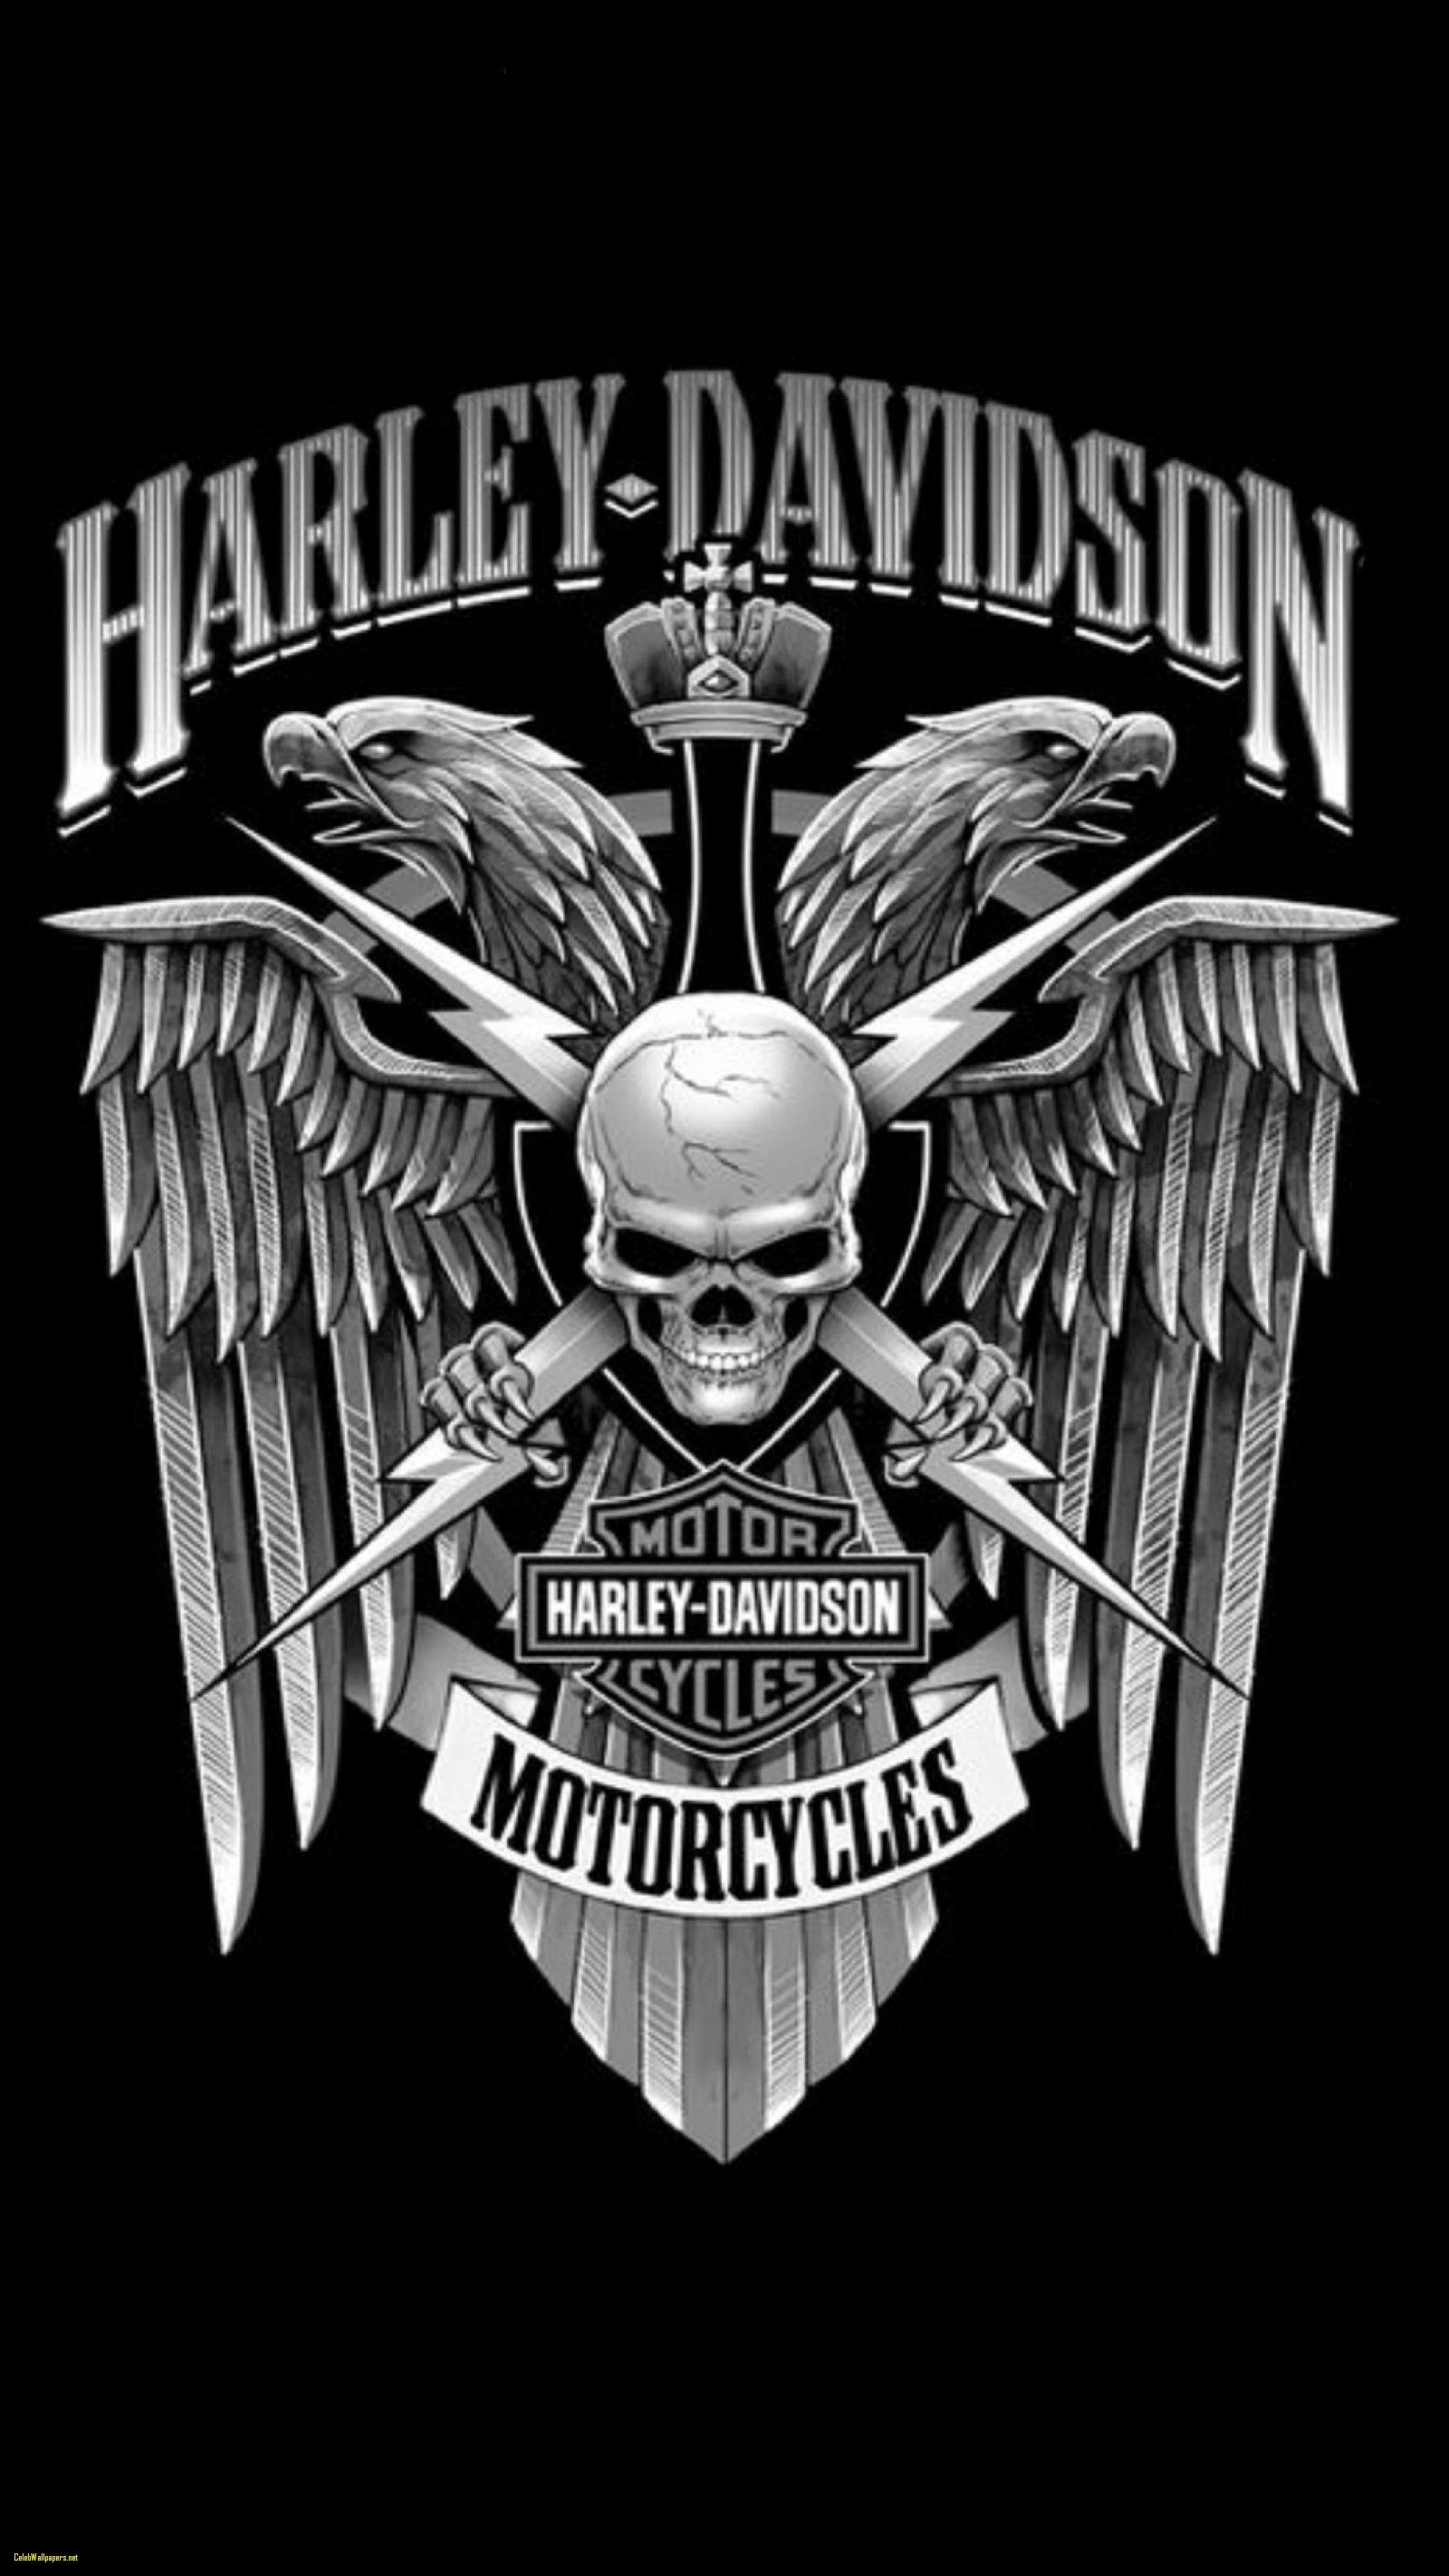 47 Harley Davidson Wallpaper for iPhone  WallpaperSafari